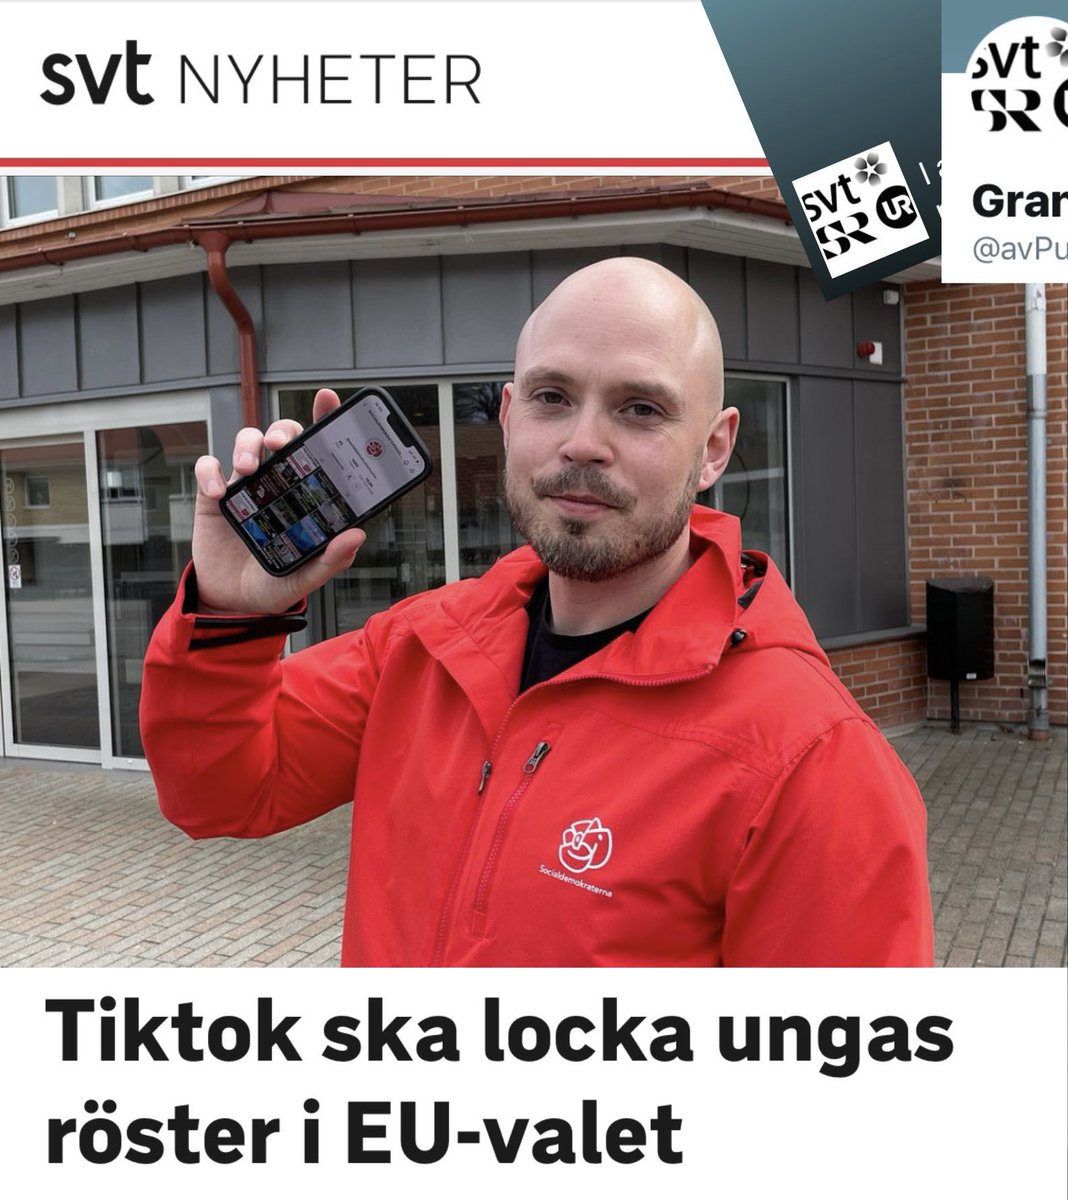 Opartiska @SVT hjälper Socialdemokraterna marknadsföra sitt Tiktok-konto

Ja, @SVT är såklart opartiska. Så nu följer vi med spänning vilka andra politiska partiers sociala medier-konton ”public service” kommer göra reklam för nästa gång.

Kommer det att vara Moderaterna eller…